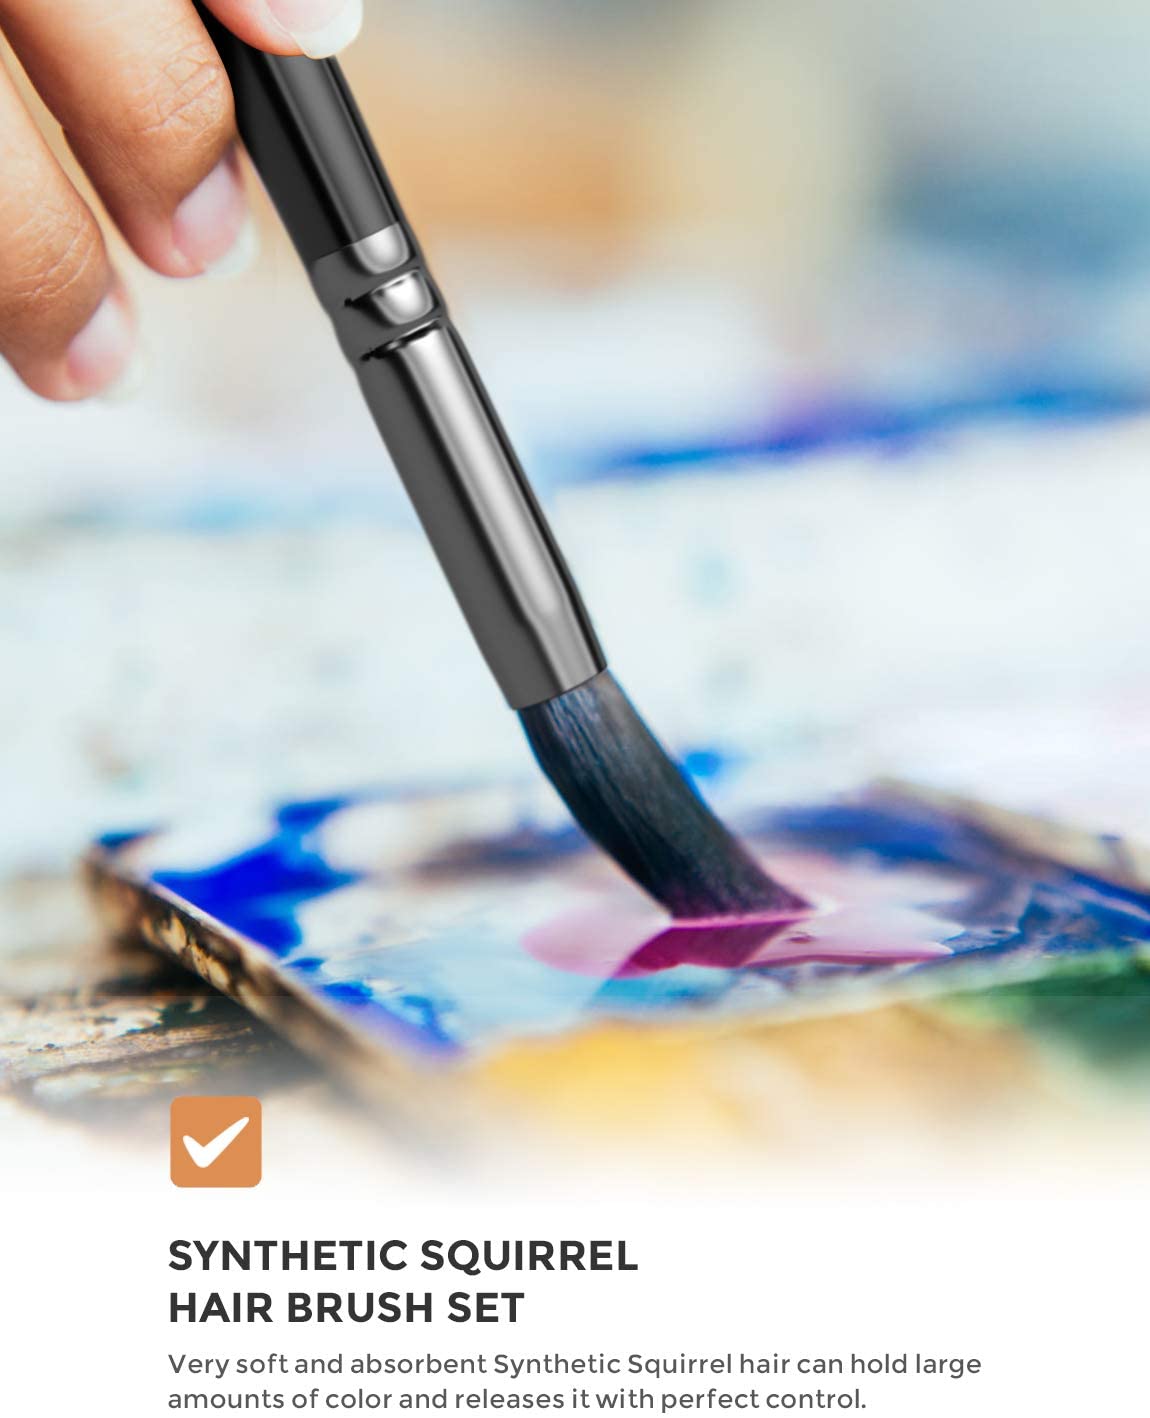 15Pcs Art Painting Brushes Set Acrylic Oil Watercolor Artist Paint Brush Kit